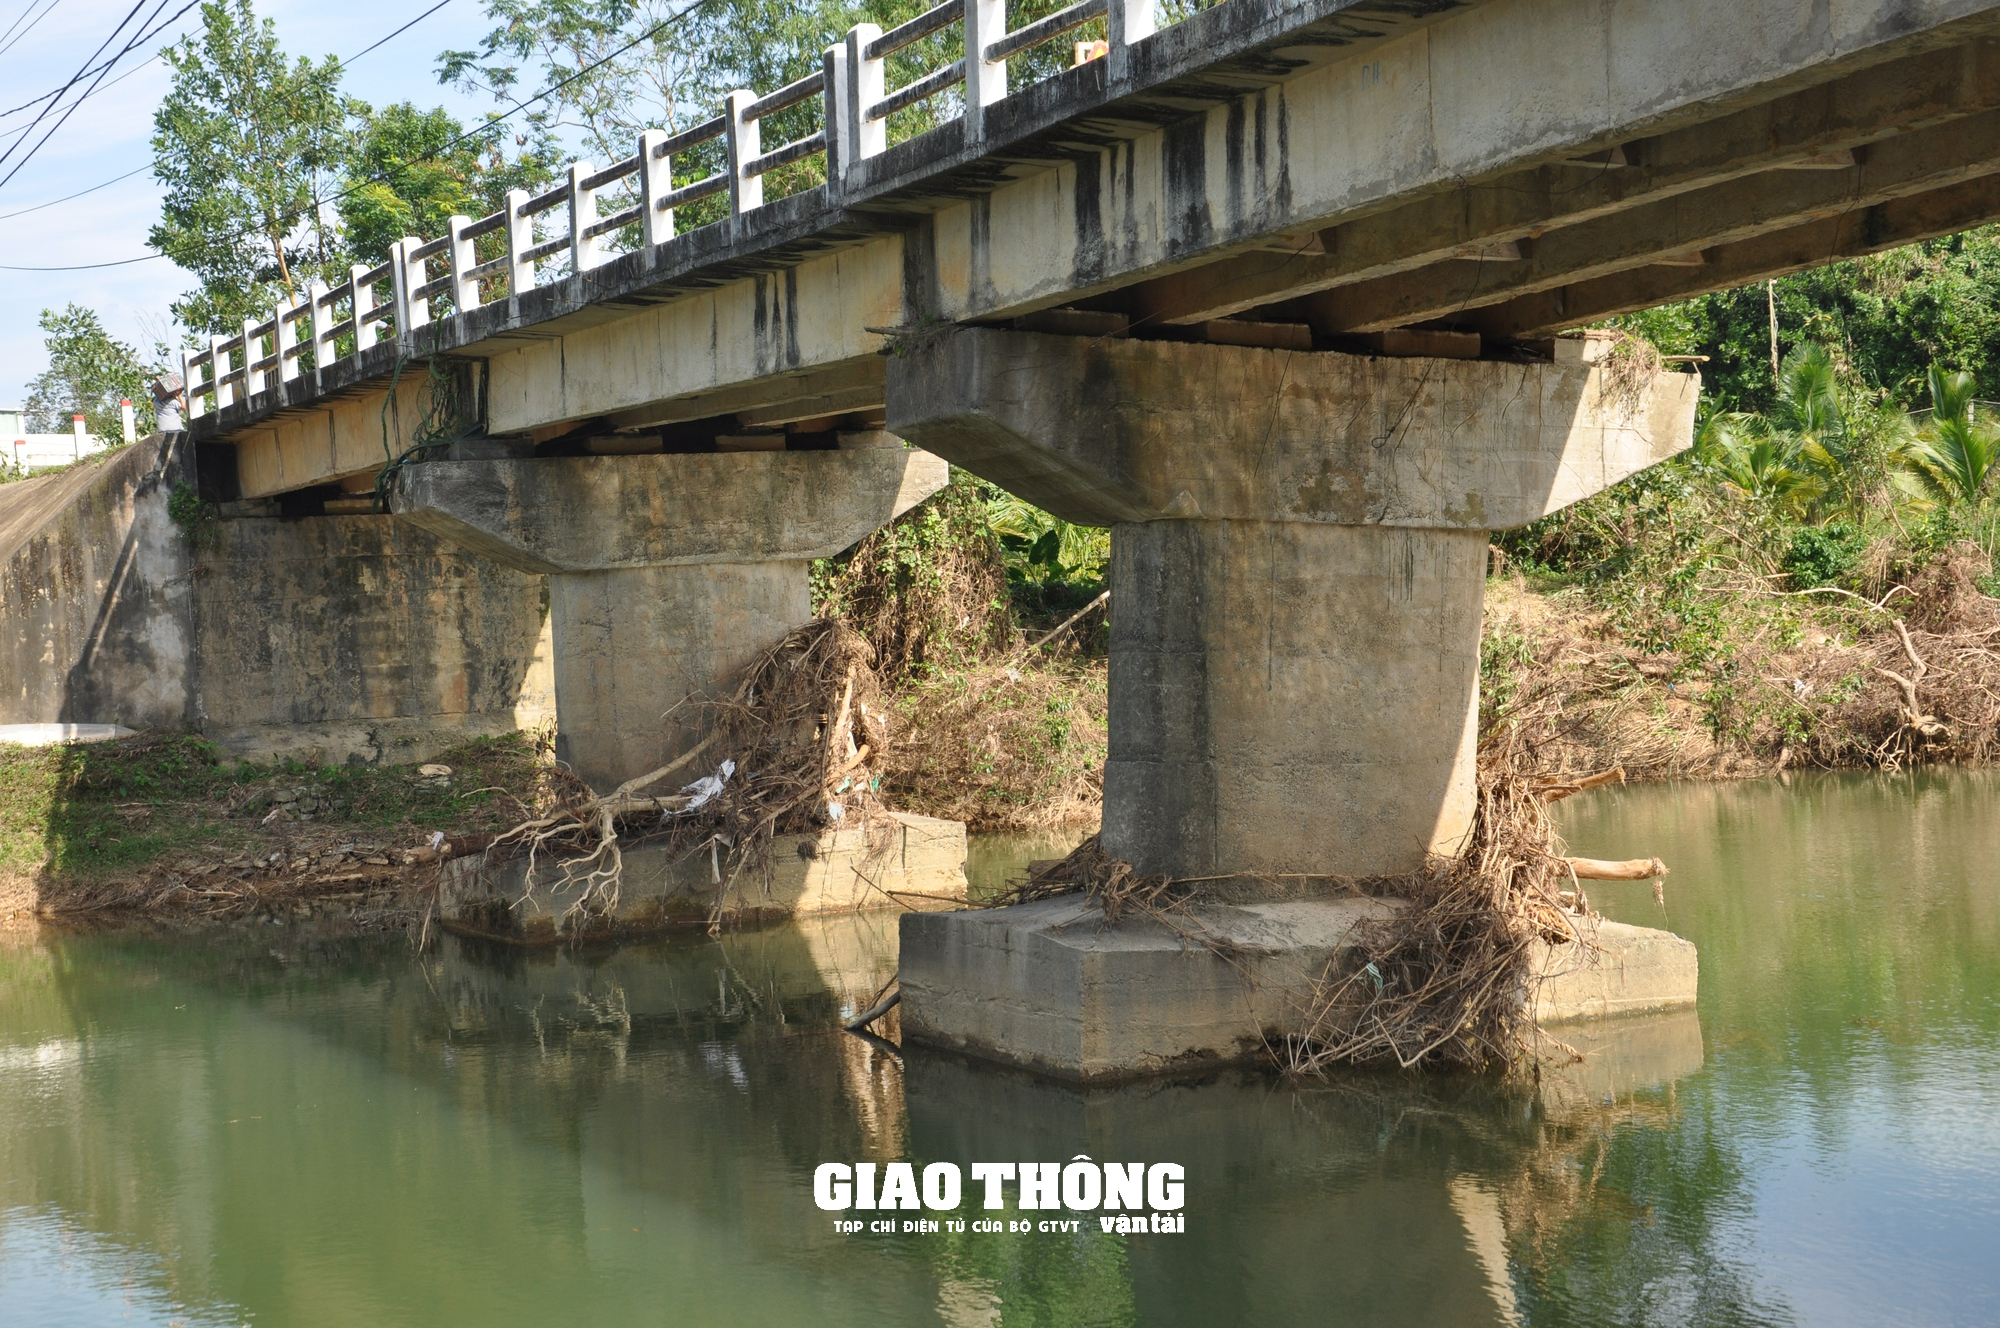 Cây cầu ở Quảng Nam bất ngờ sụt lún: Nguyên nhân từ đâu? - Ảnh 5.